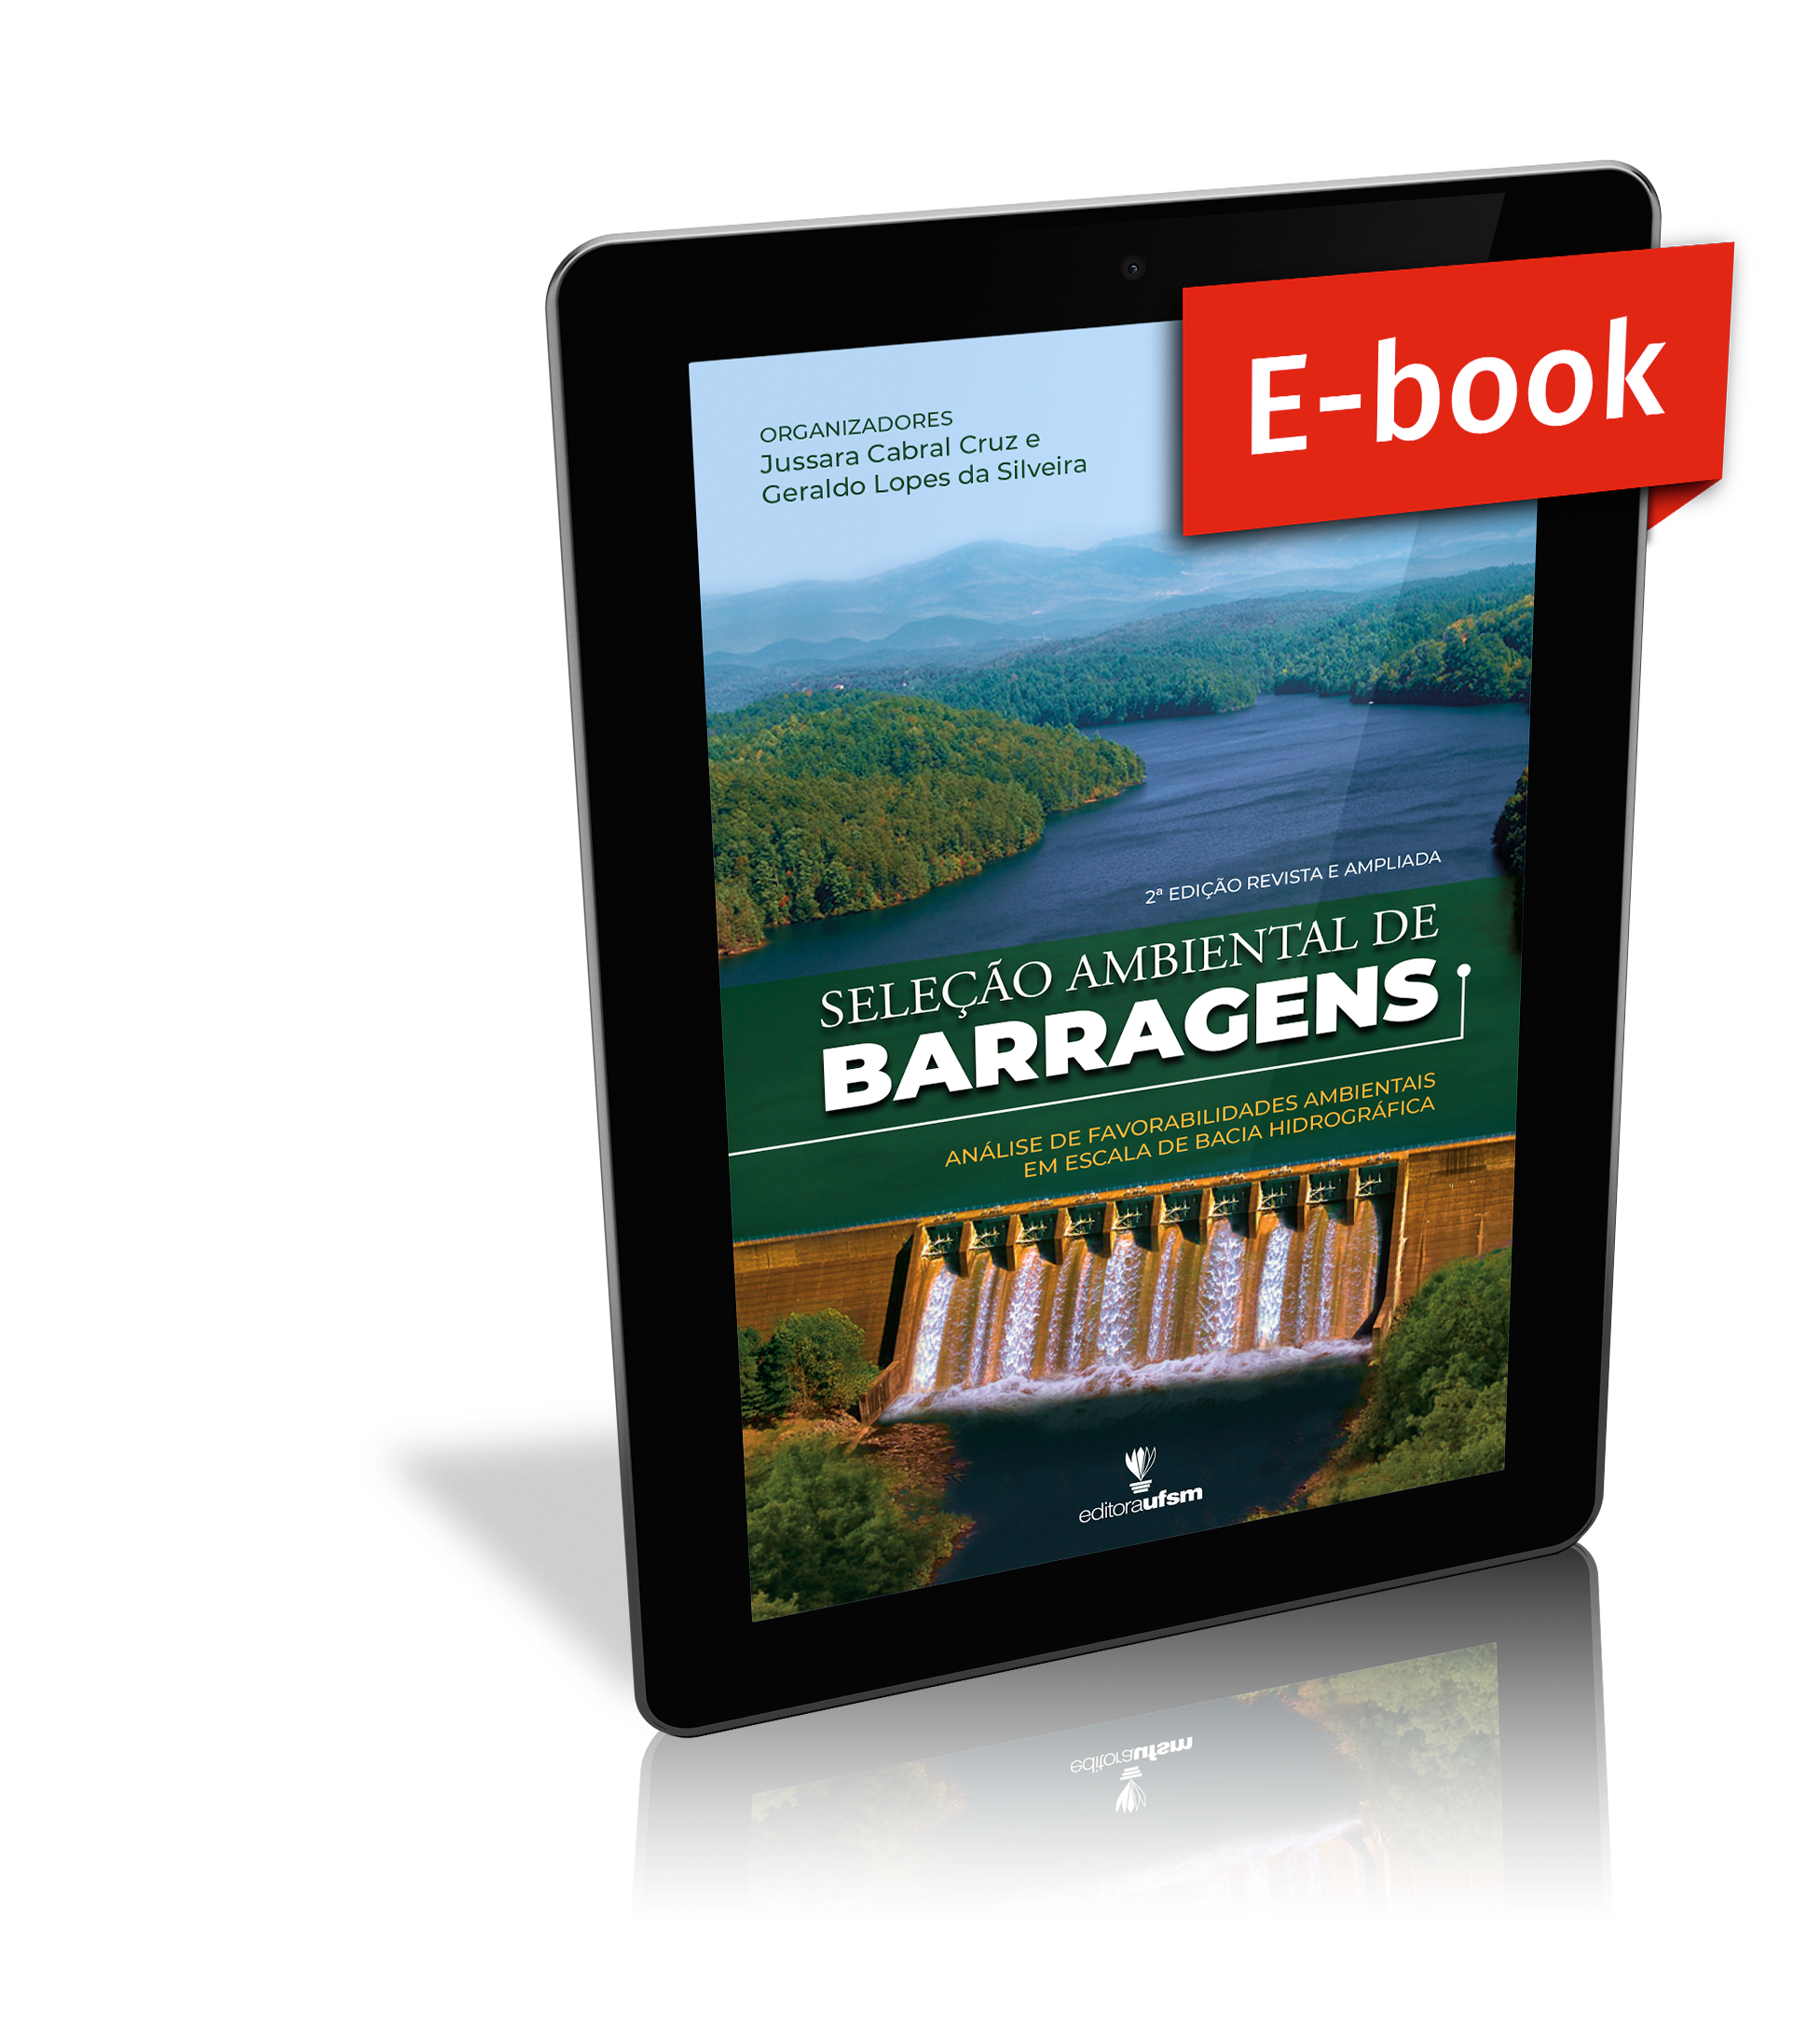 Capa do ebook Seleção ambiental de barragens: análise de favorabilidades ambientais em escala de bacia hidrográfica - 2º edição revista e ampliada